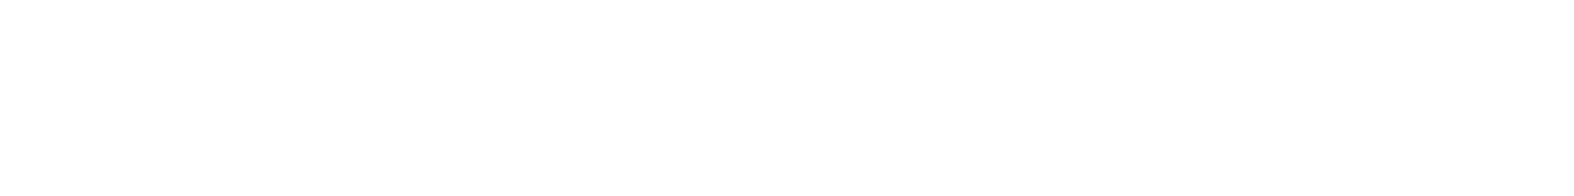 Red Eléctrica logo grand pour les fonds sombres (PNG transparent)